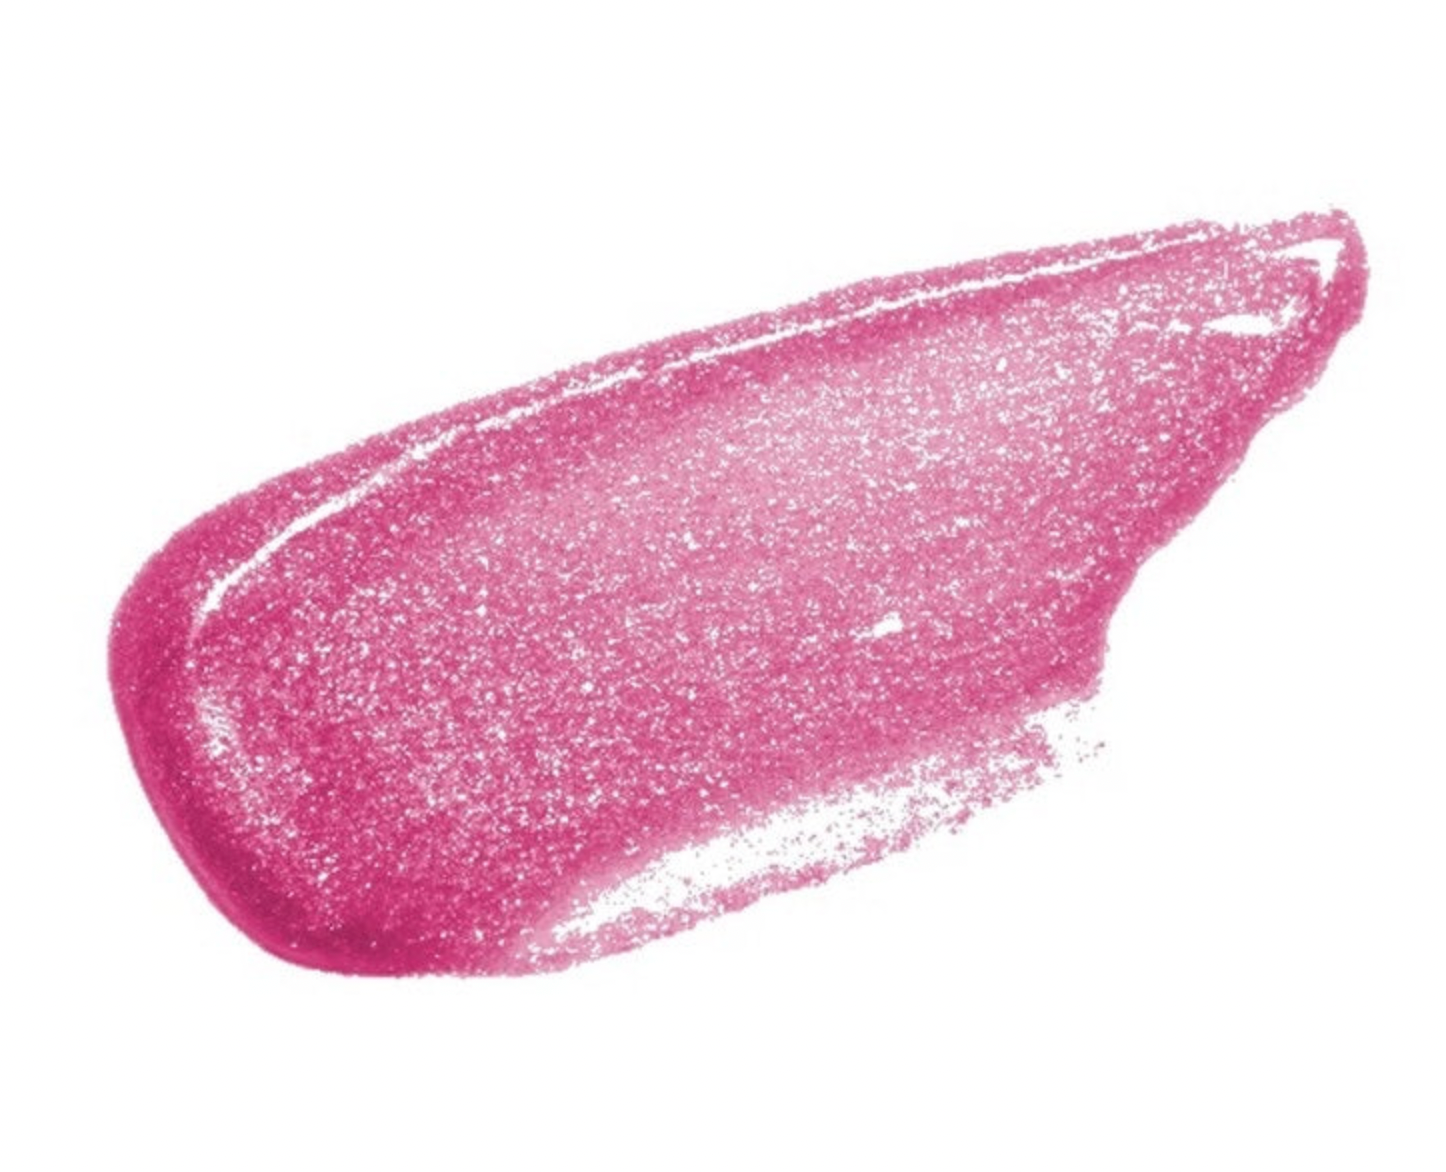 Sugar Plum Fairy Lip Gloss